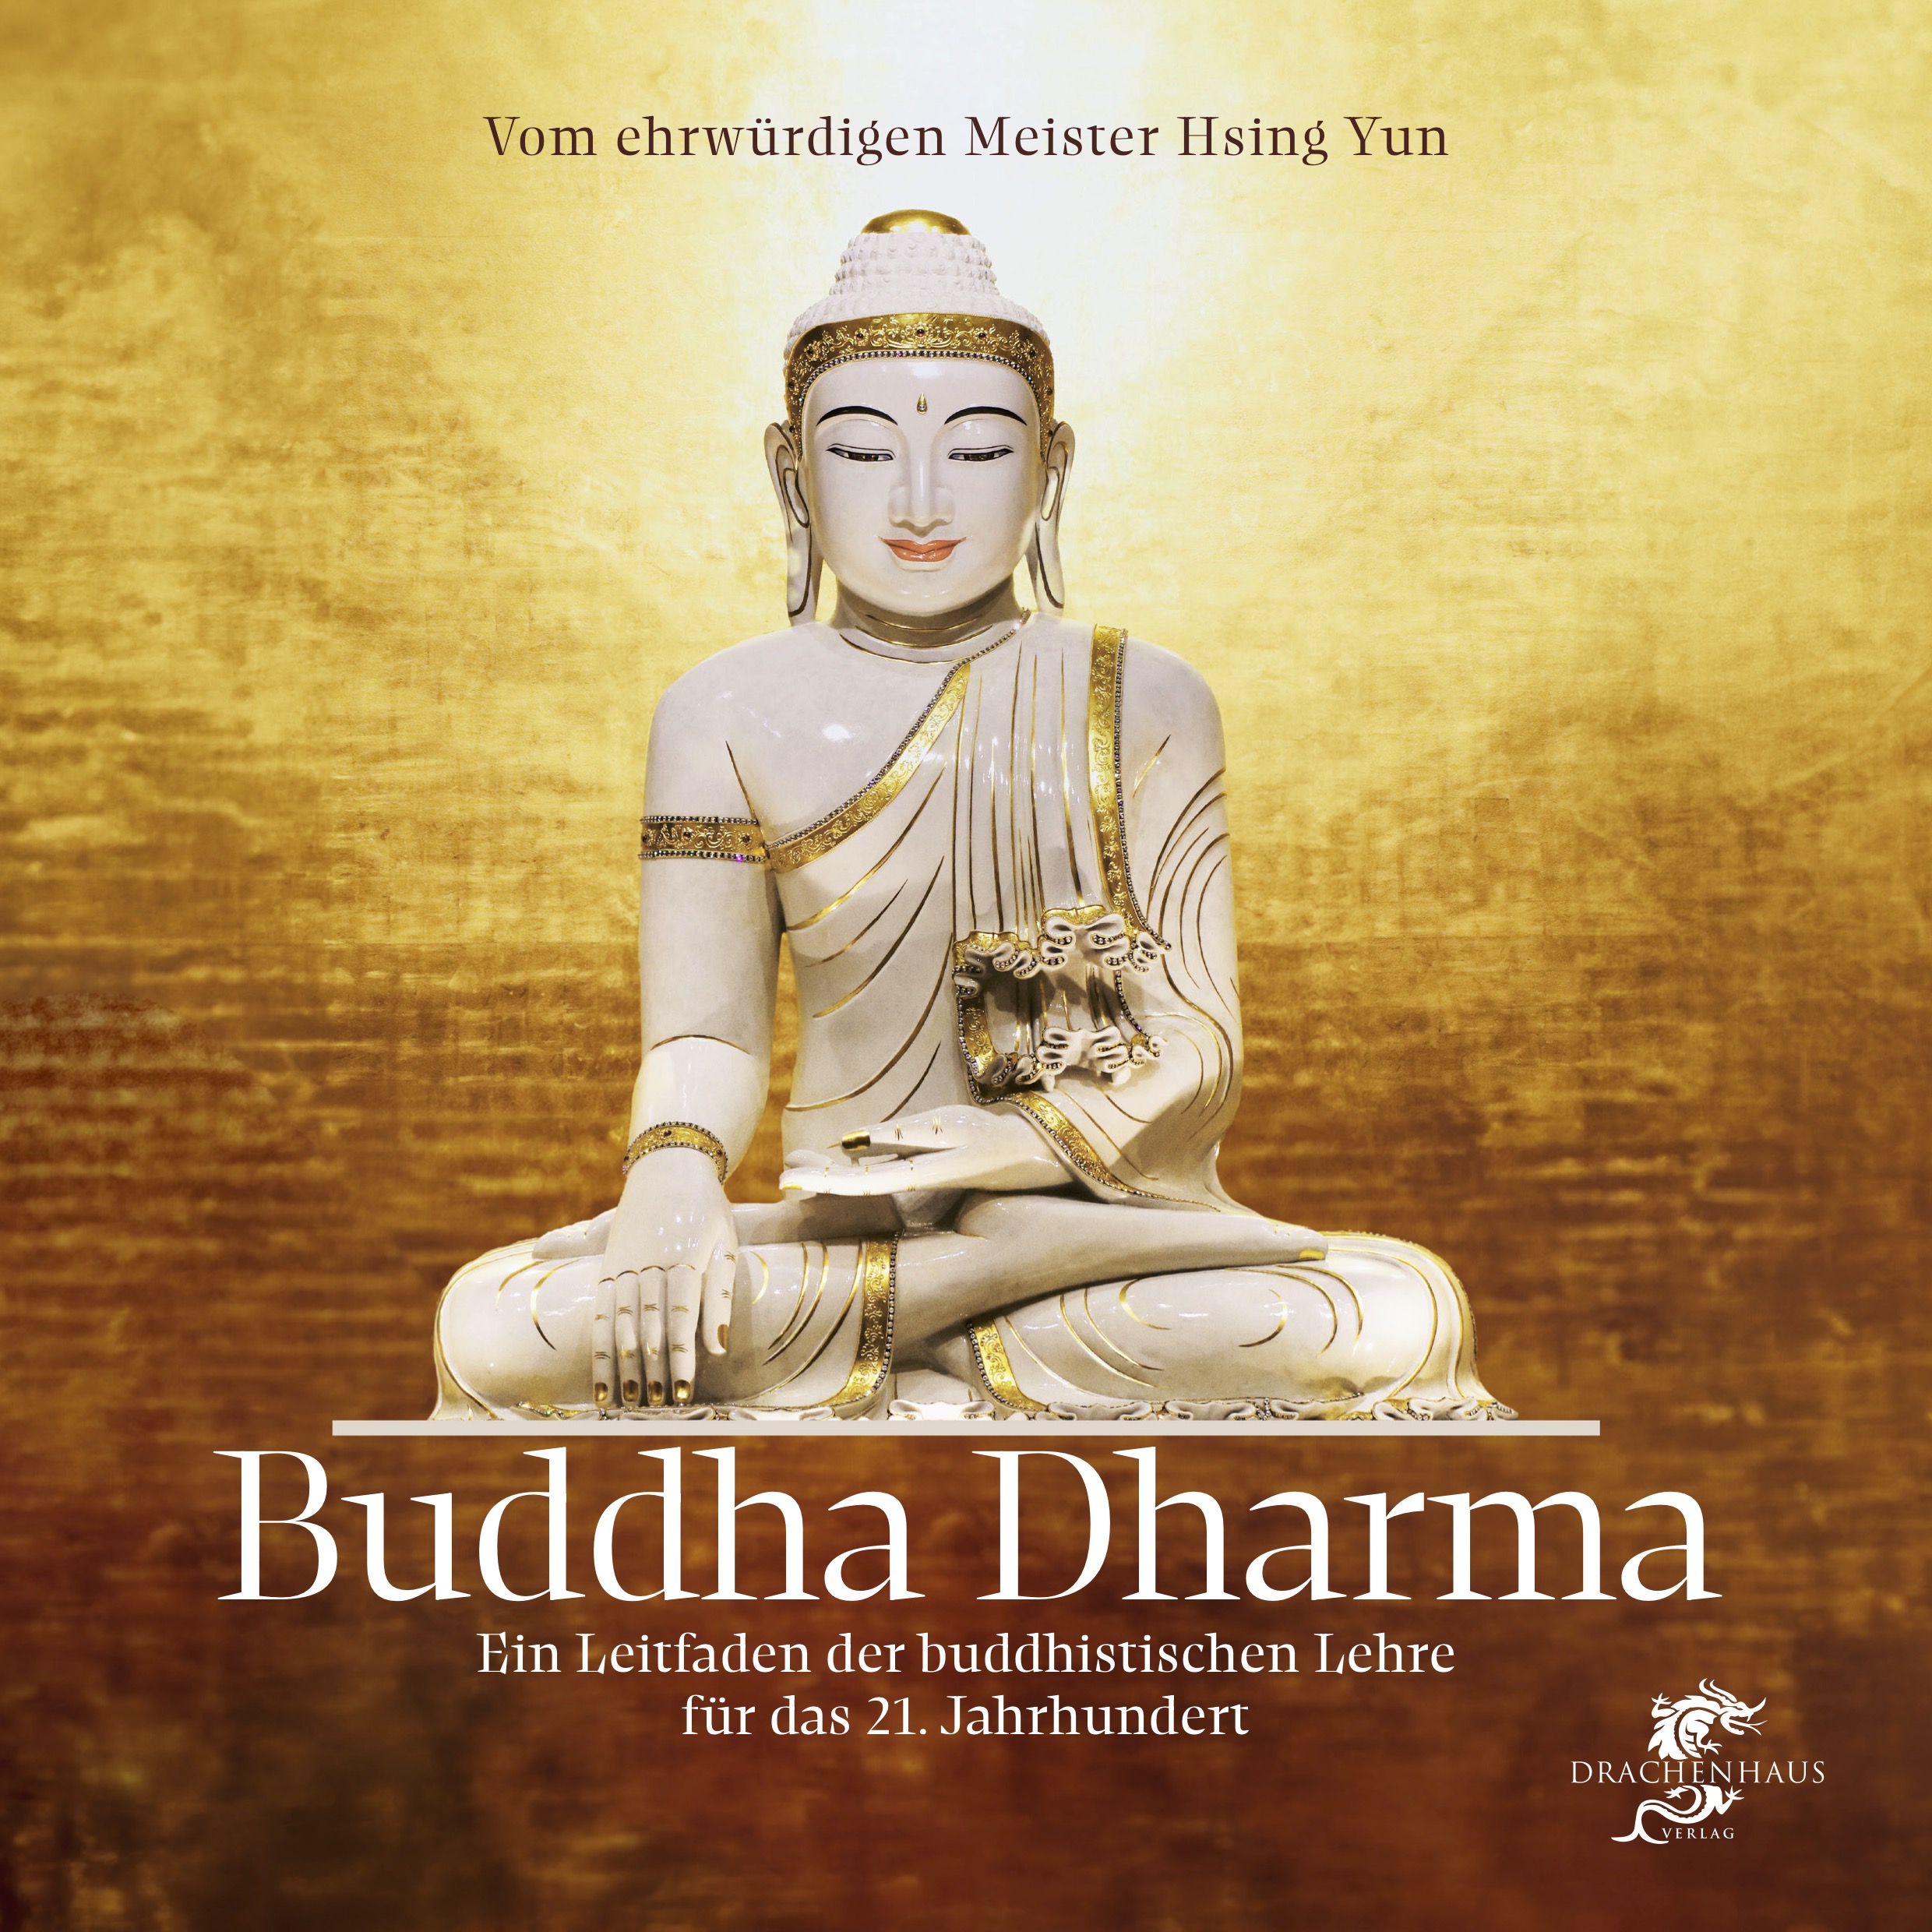 Buddha Dharma, Drachenhaus Verlag